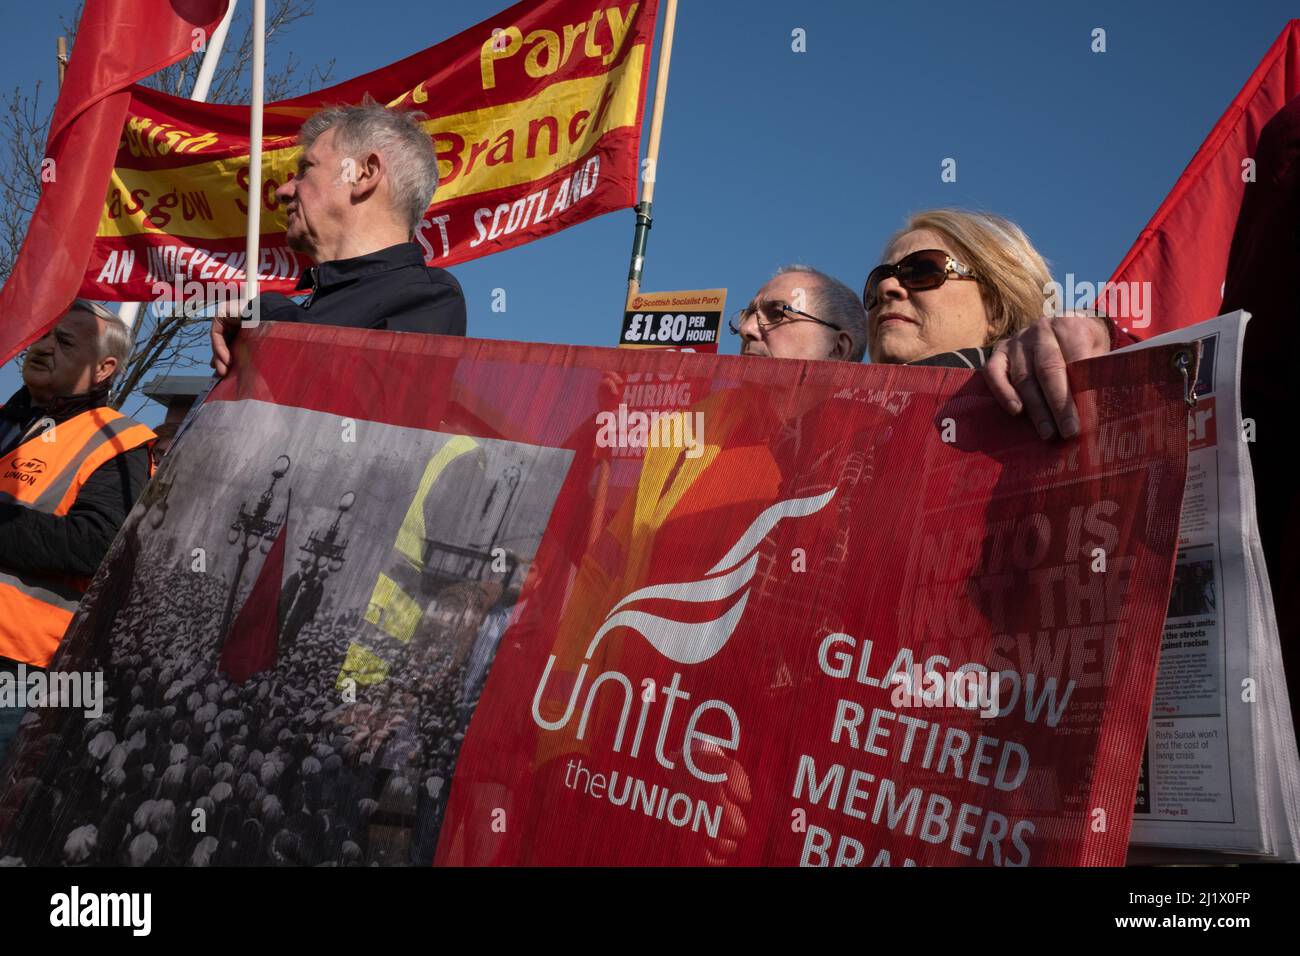 Protestation des syndicats et des partis politiques écossais contre le licenciement de 800 employés sur les ferries P&O, à l'extérieur de Clyde Marine Recruitment - la société responsable du recrutement des travailleurs de remplacement, à Glasgow, en Écosse, en 28March 2022. Banque D'Images